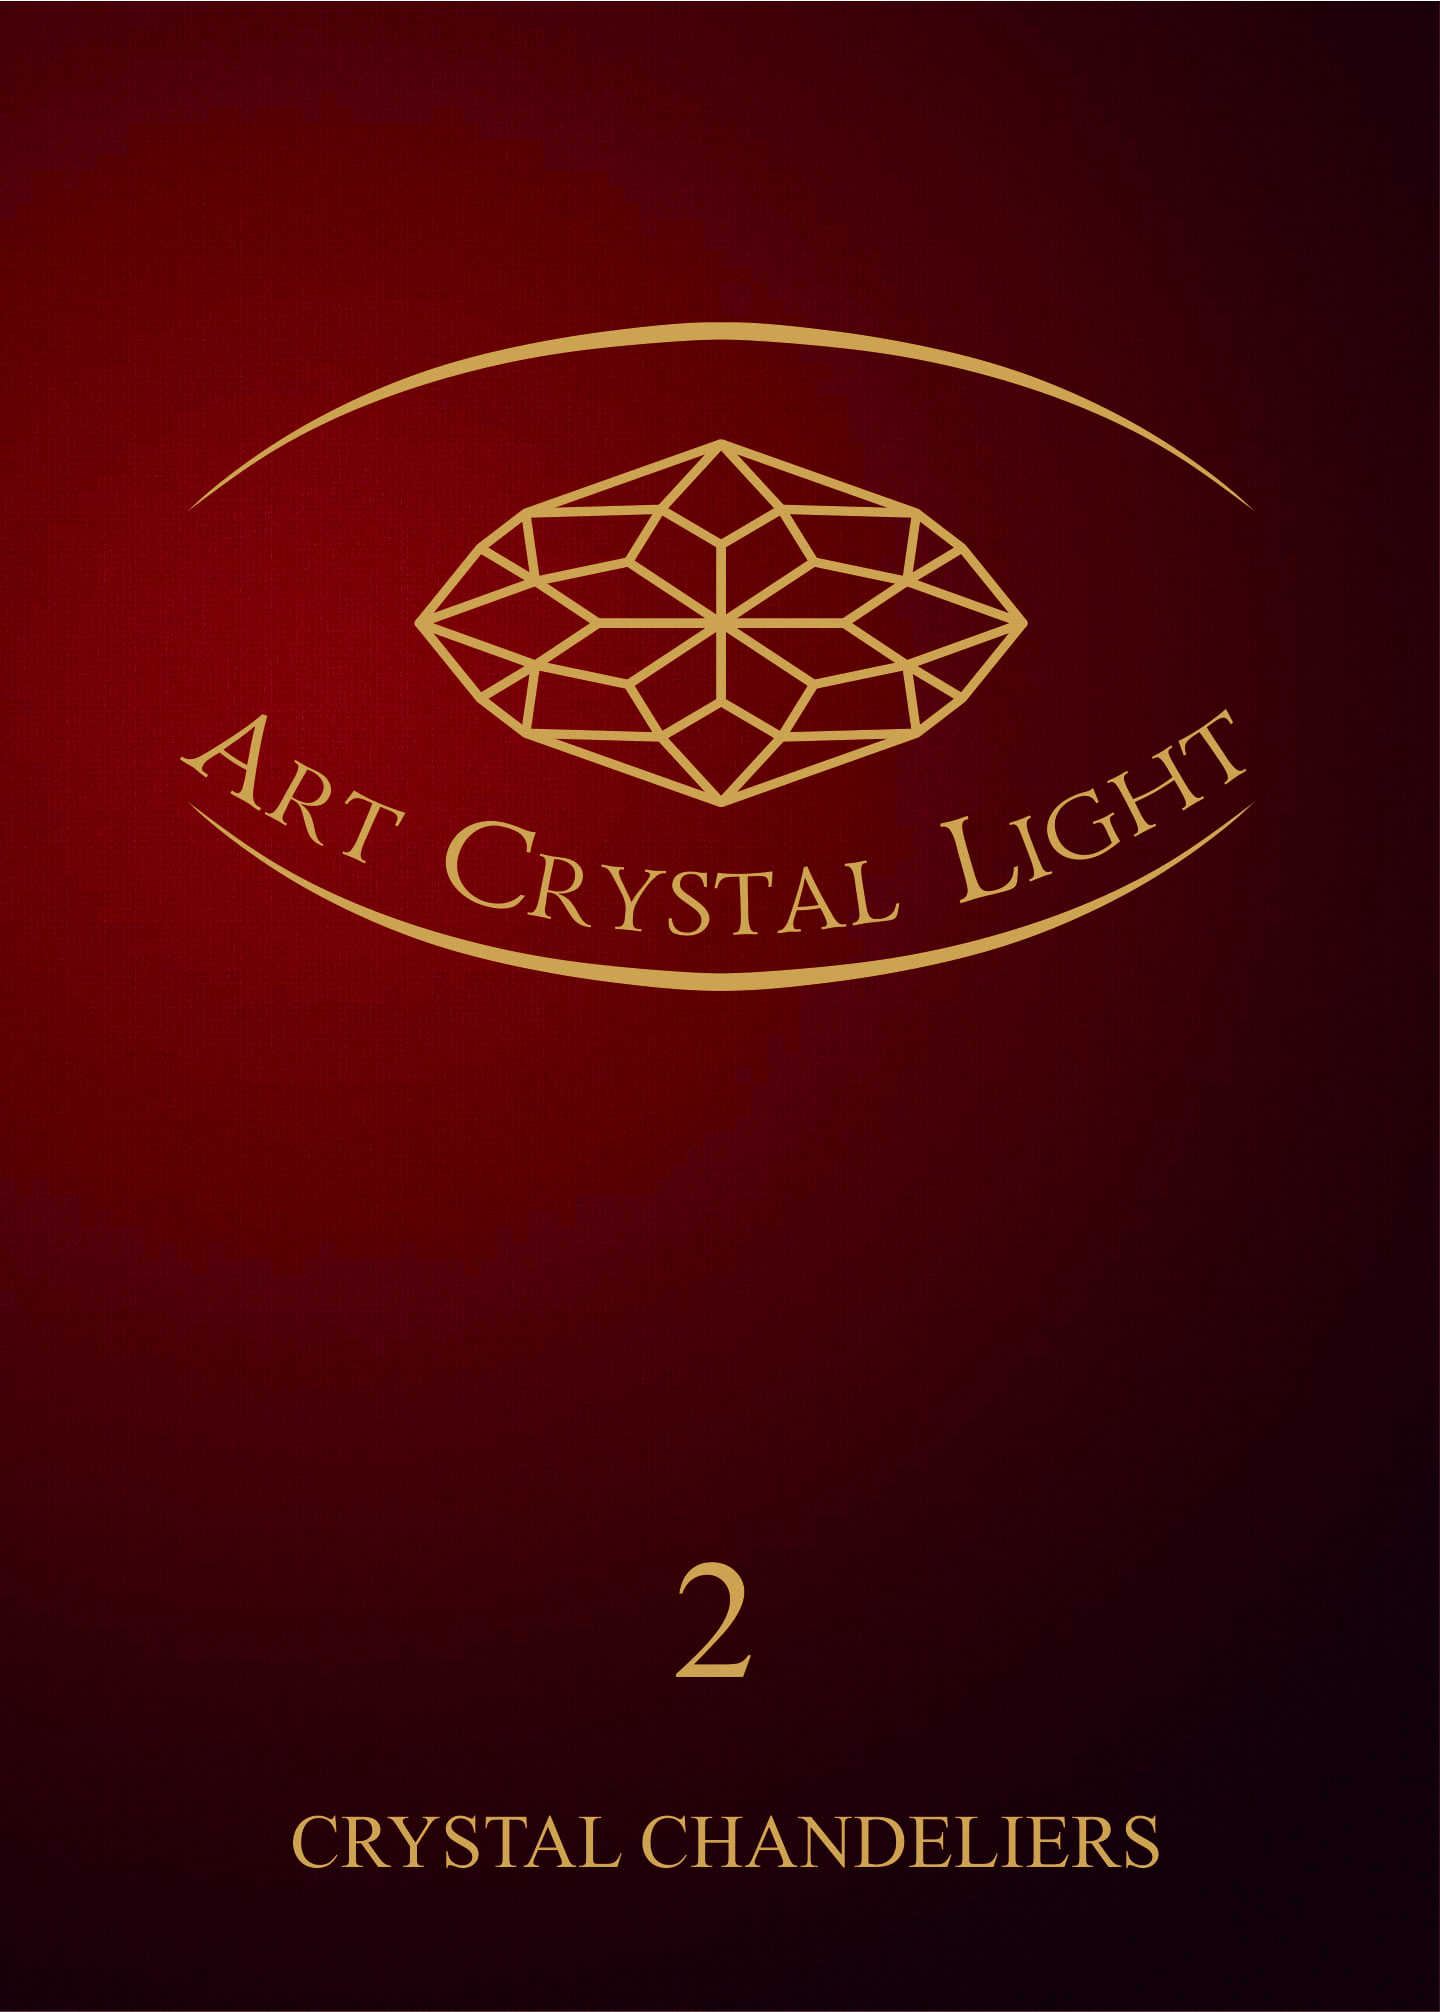 Каталог классических хрустальных светильников Art Crystal Light - 2 том.